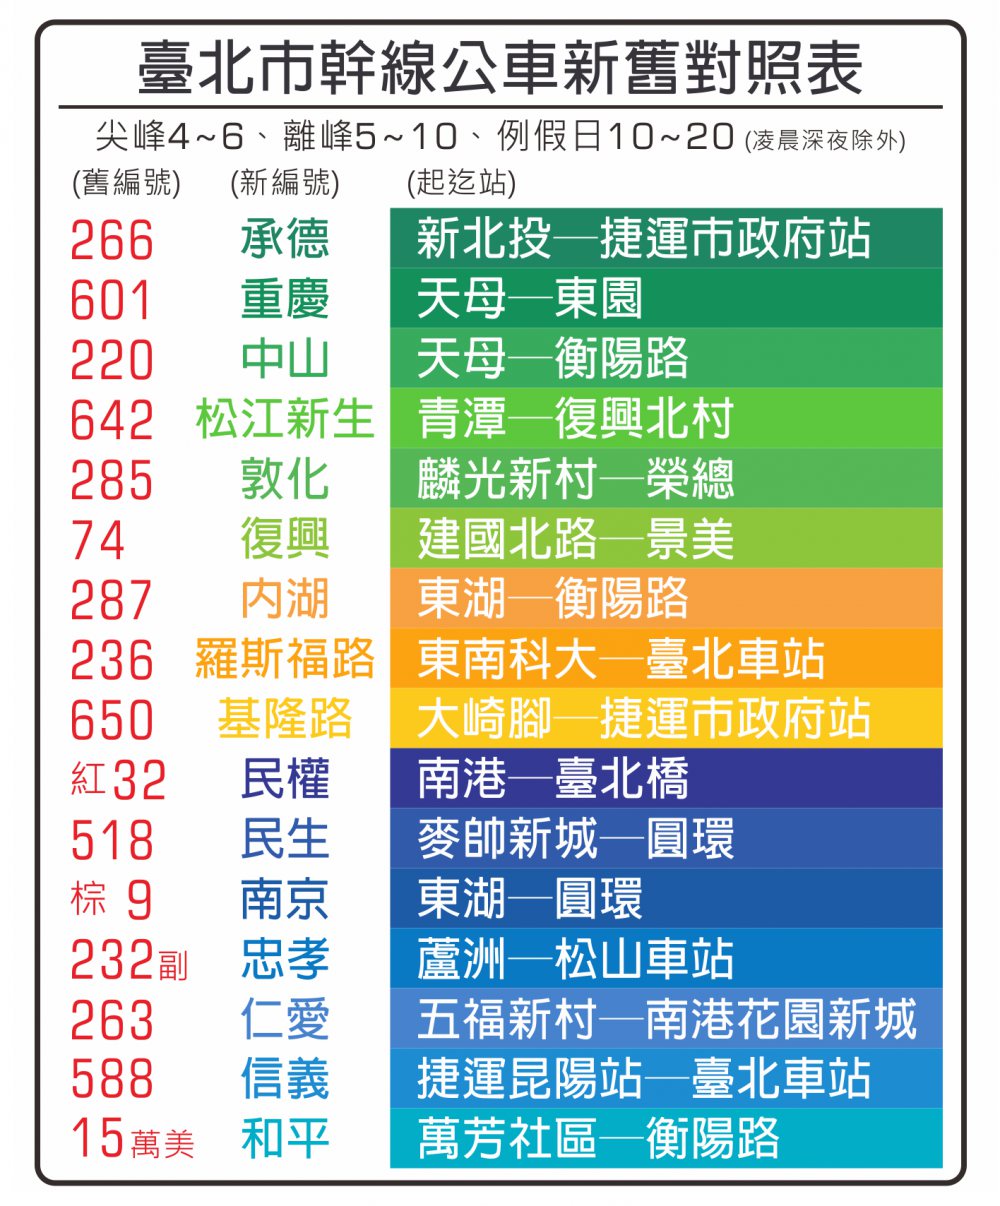 台北市幹線バス新旧対照表<br />2018.3.24製作